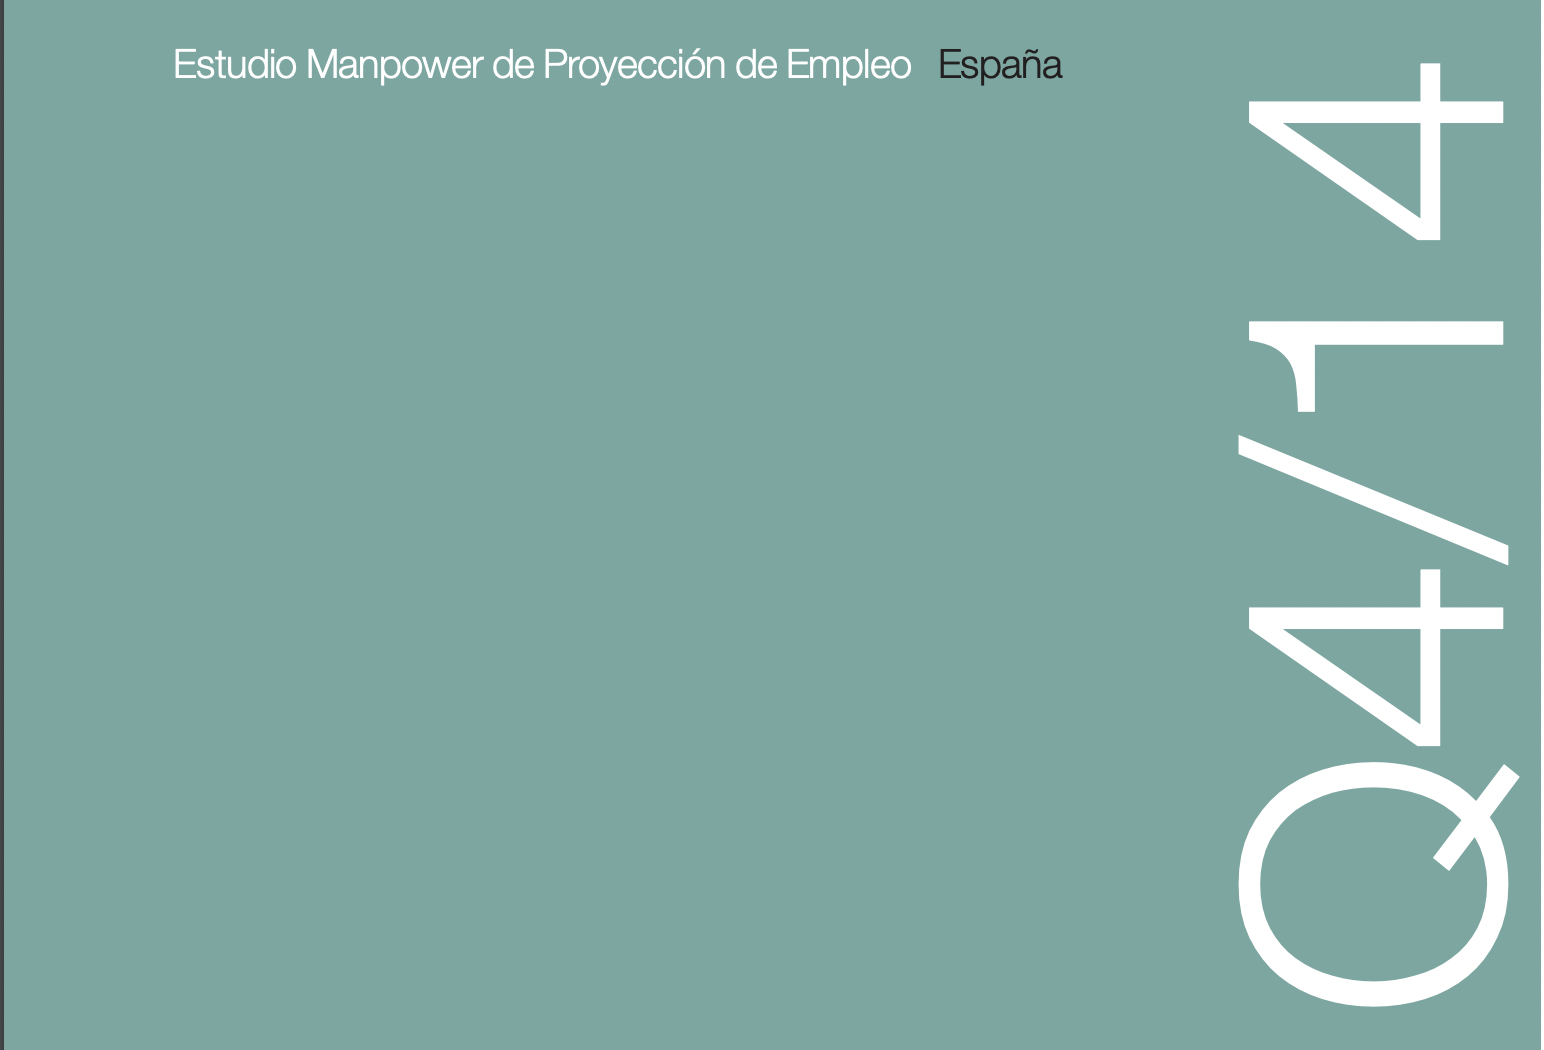 Estudio Manpower Proyección Empleo (cuarto trimestre 2014)